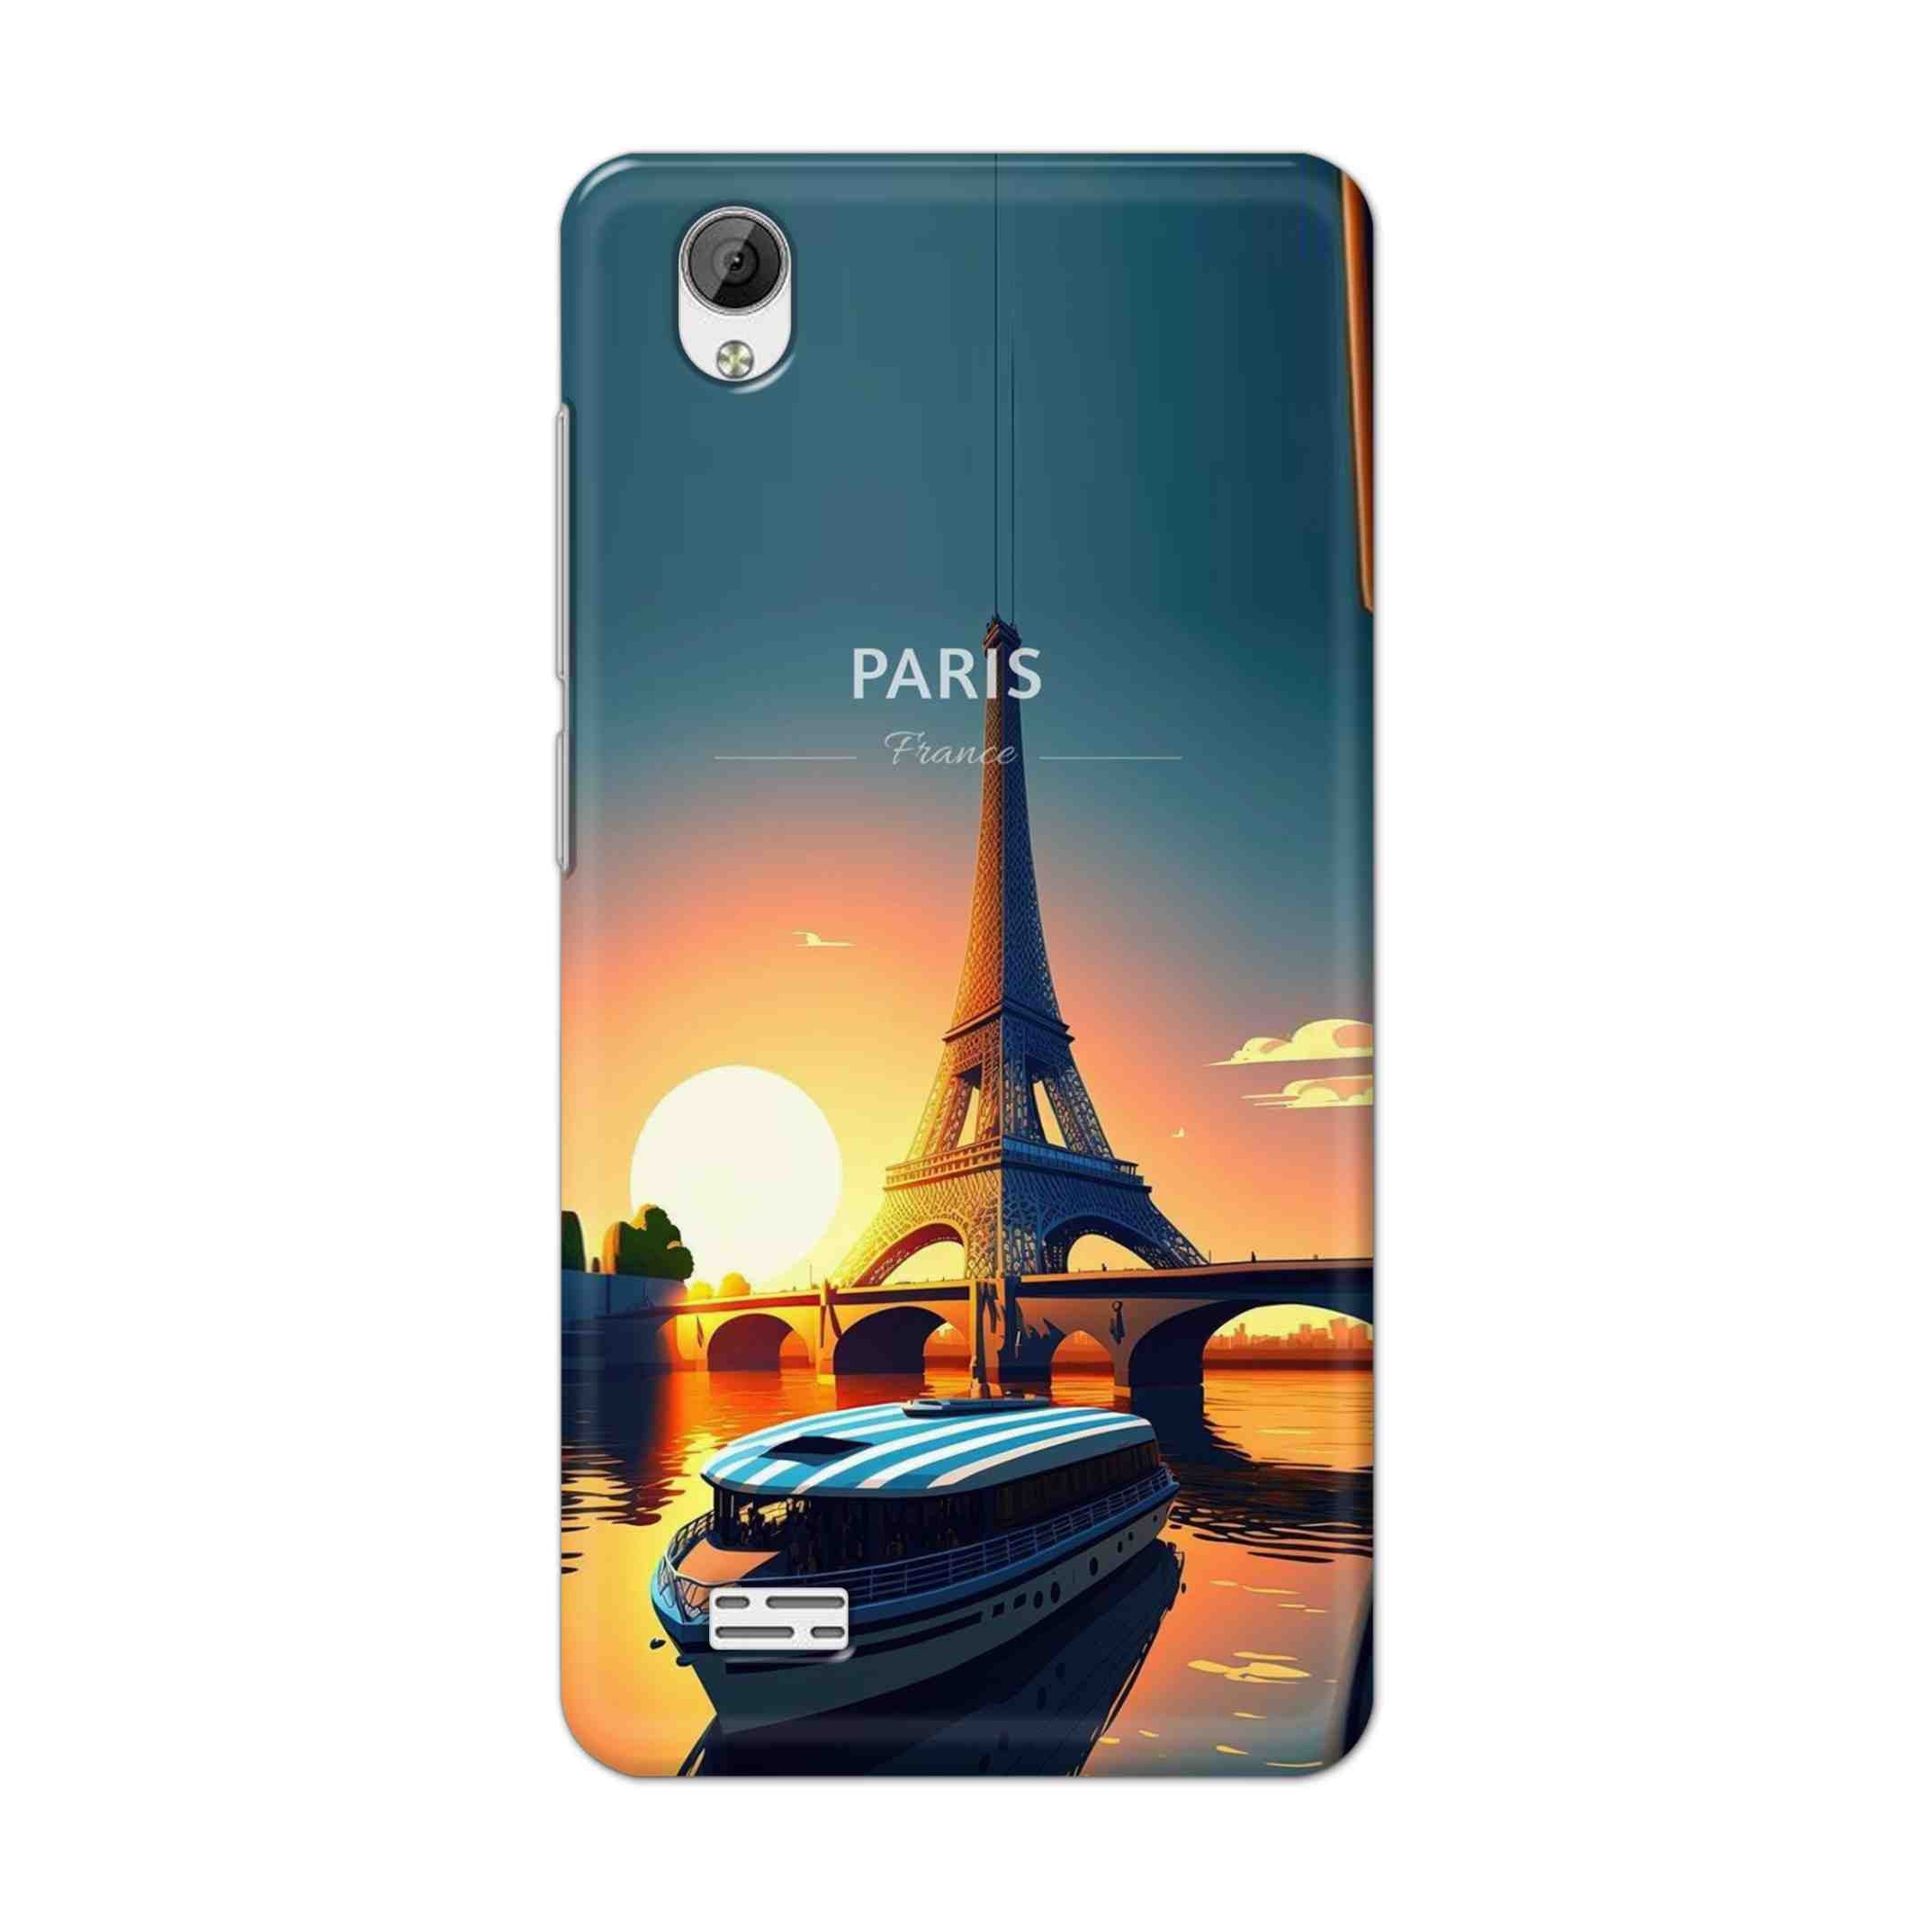 Buy France Hard Back Mobile Phone Case Cover For Vivo Y31 Online